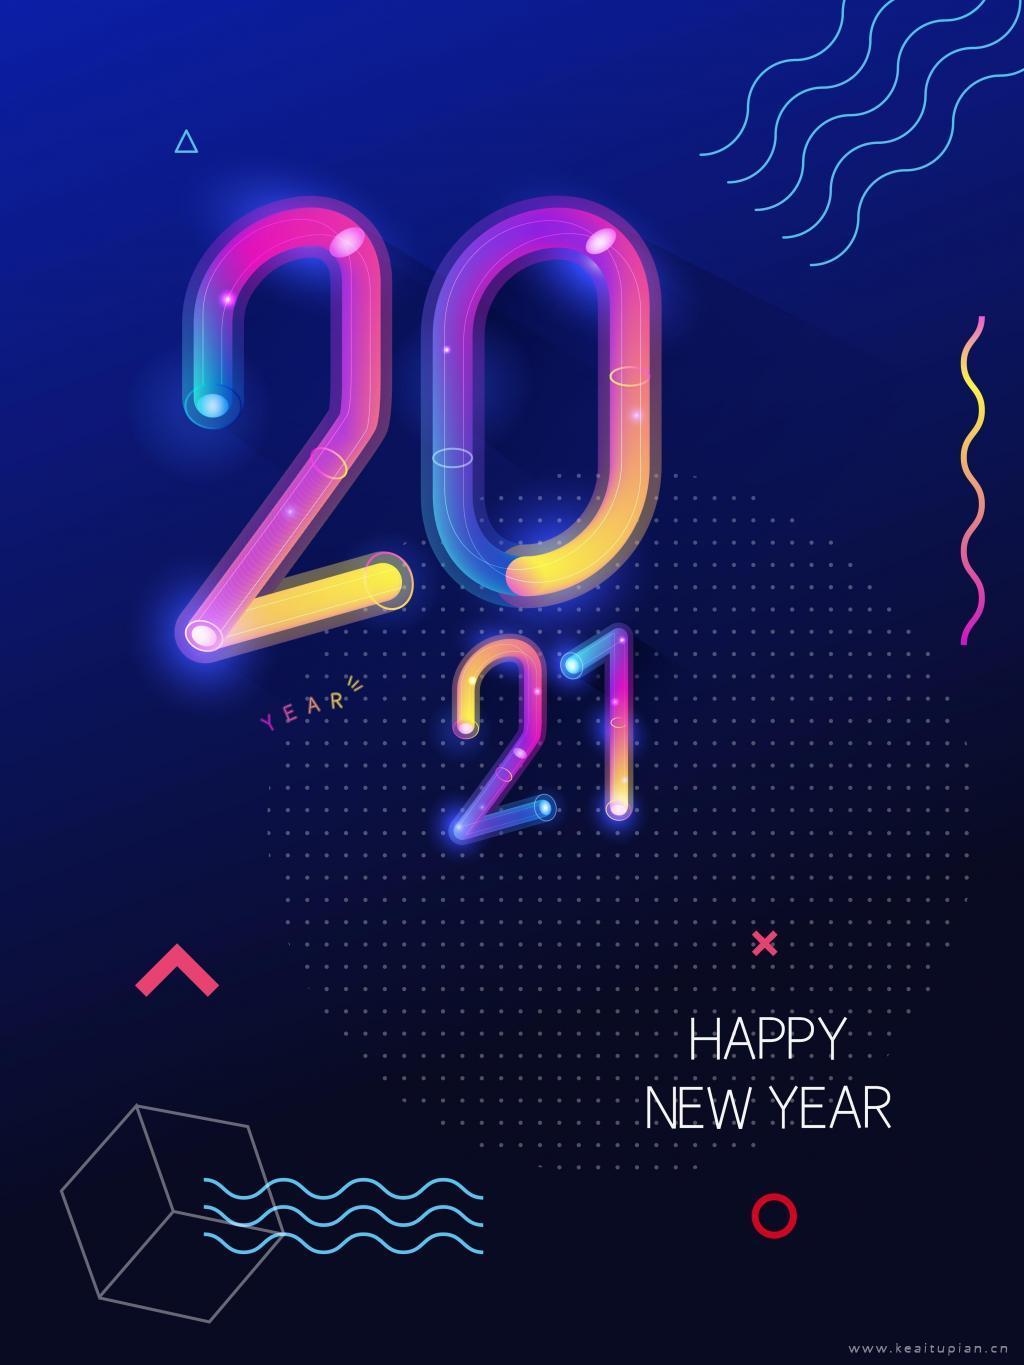 最新炫酷2021新年快乐海报创意素材图片